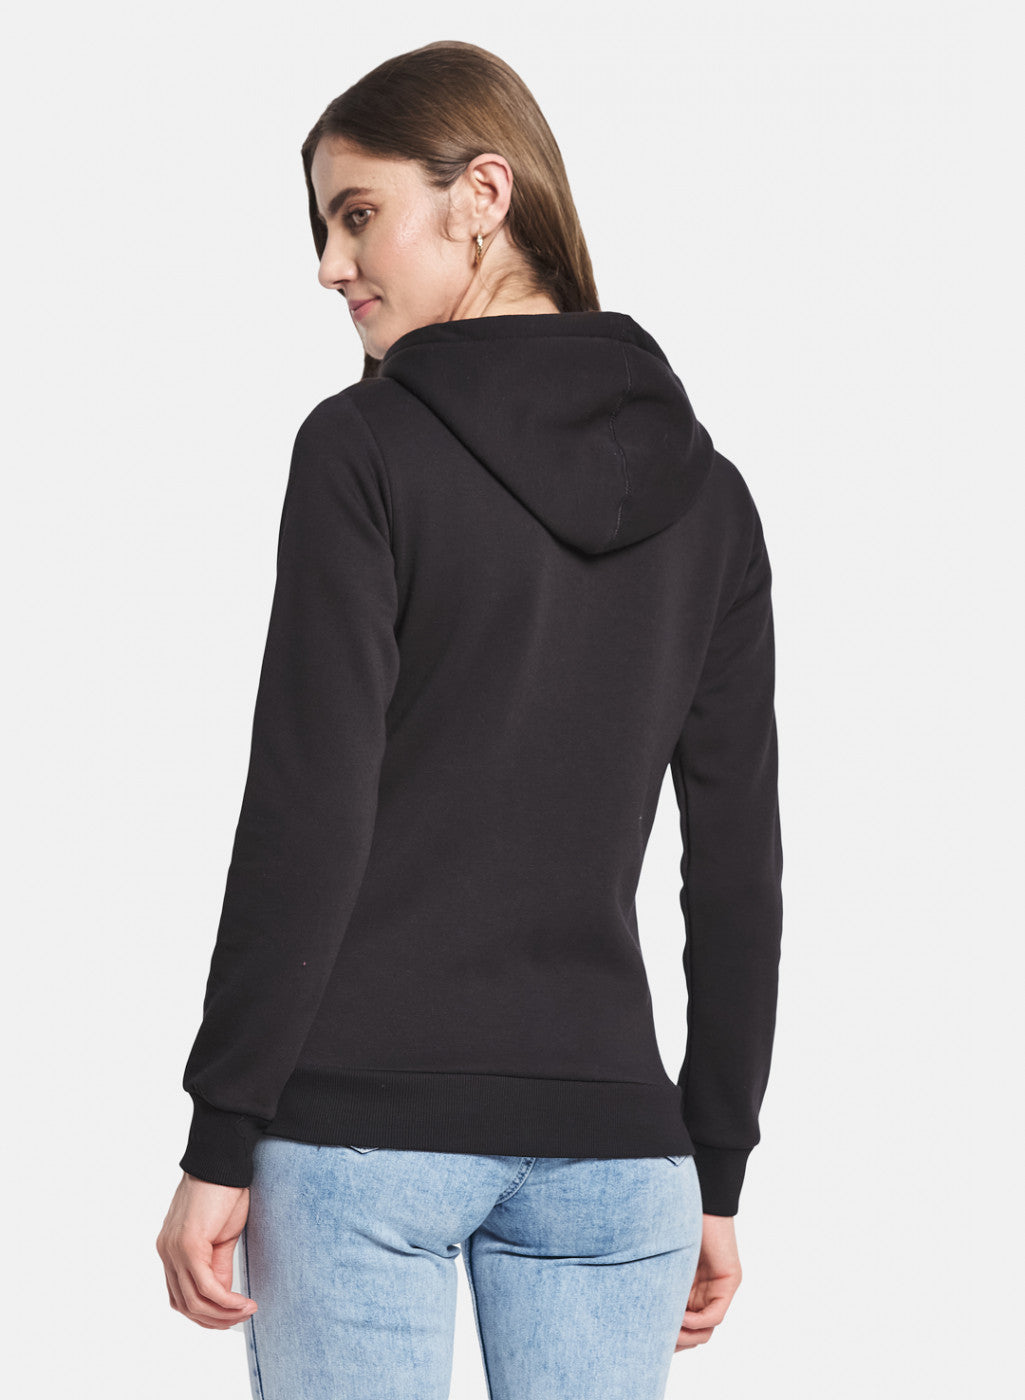 Women Black Solid Sweatshirt